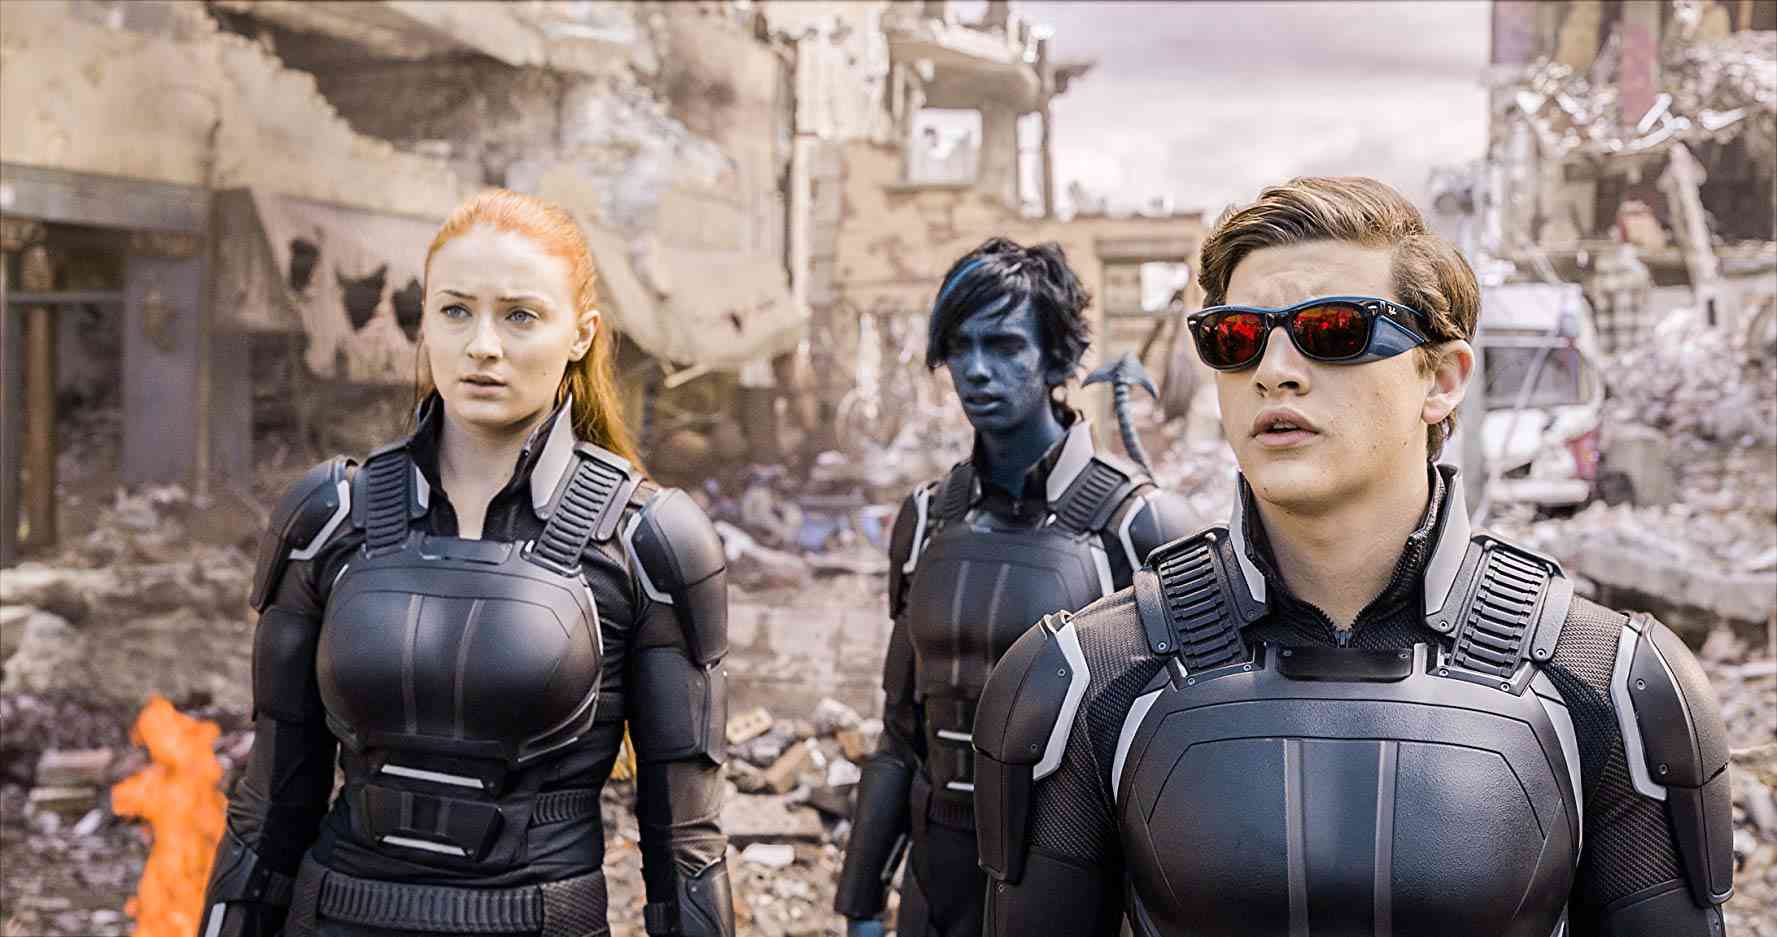  دانلود فیلم سینمایی X-Men Apocalypse 2016 دوبله فارسی